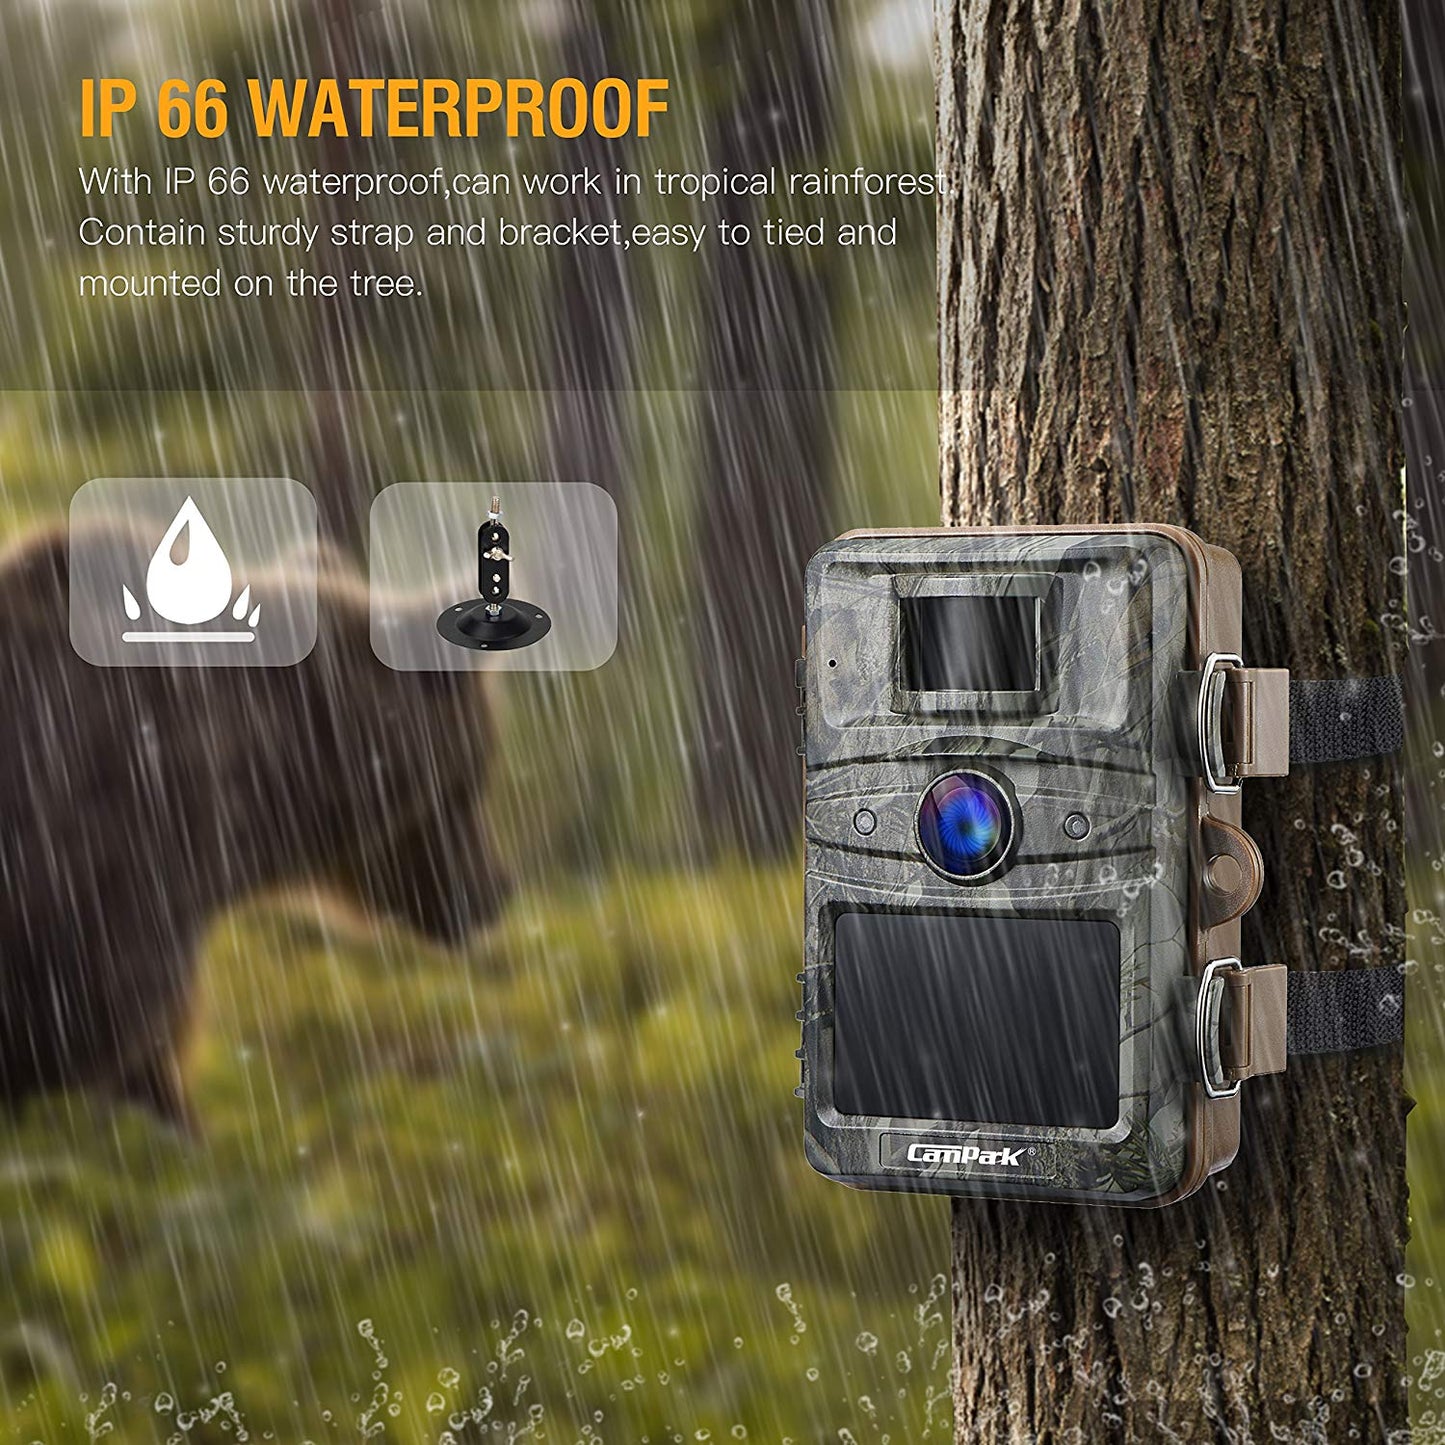 IP 66 waterproof camera